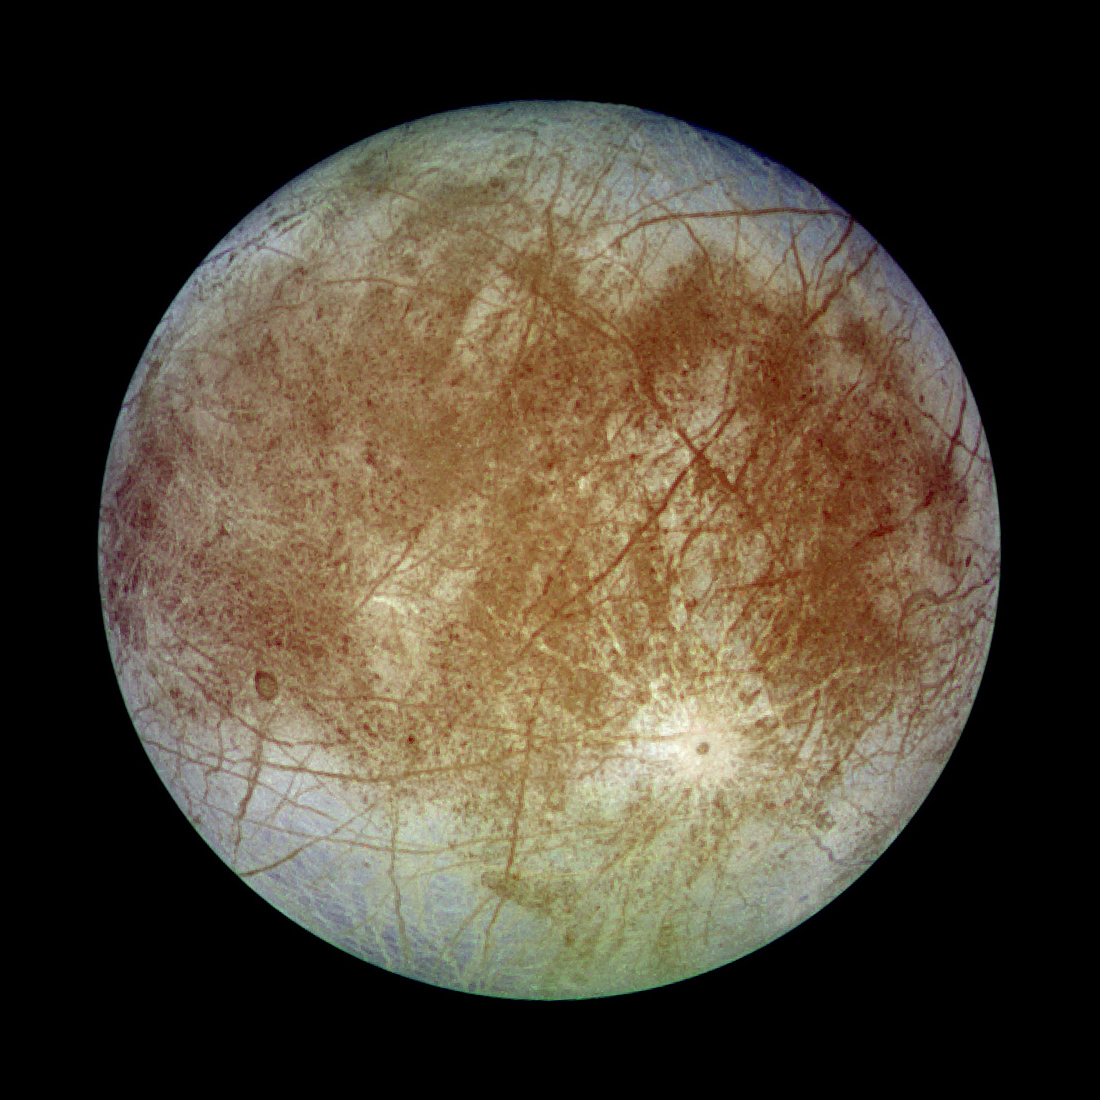 الصورة الأقرب لقمر المشتري «أوروبا»، التقطتها مركبة جونو من بُعد 350 كيلومترًا